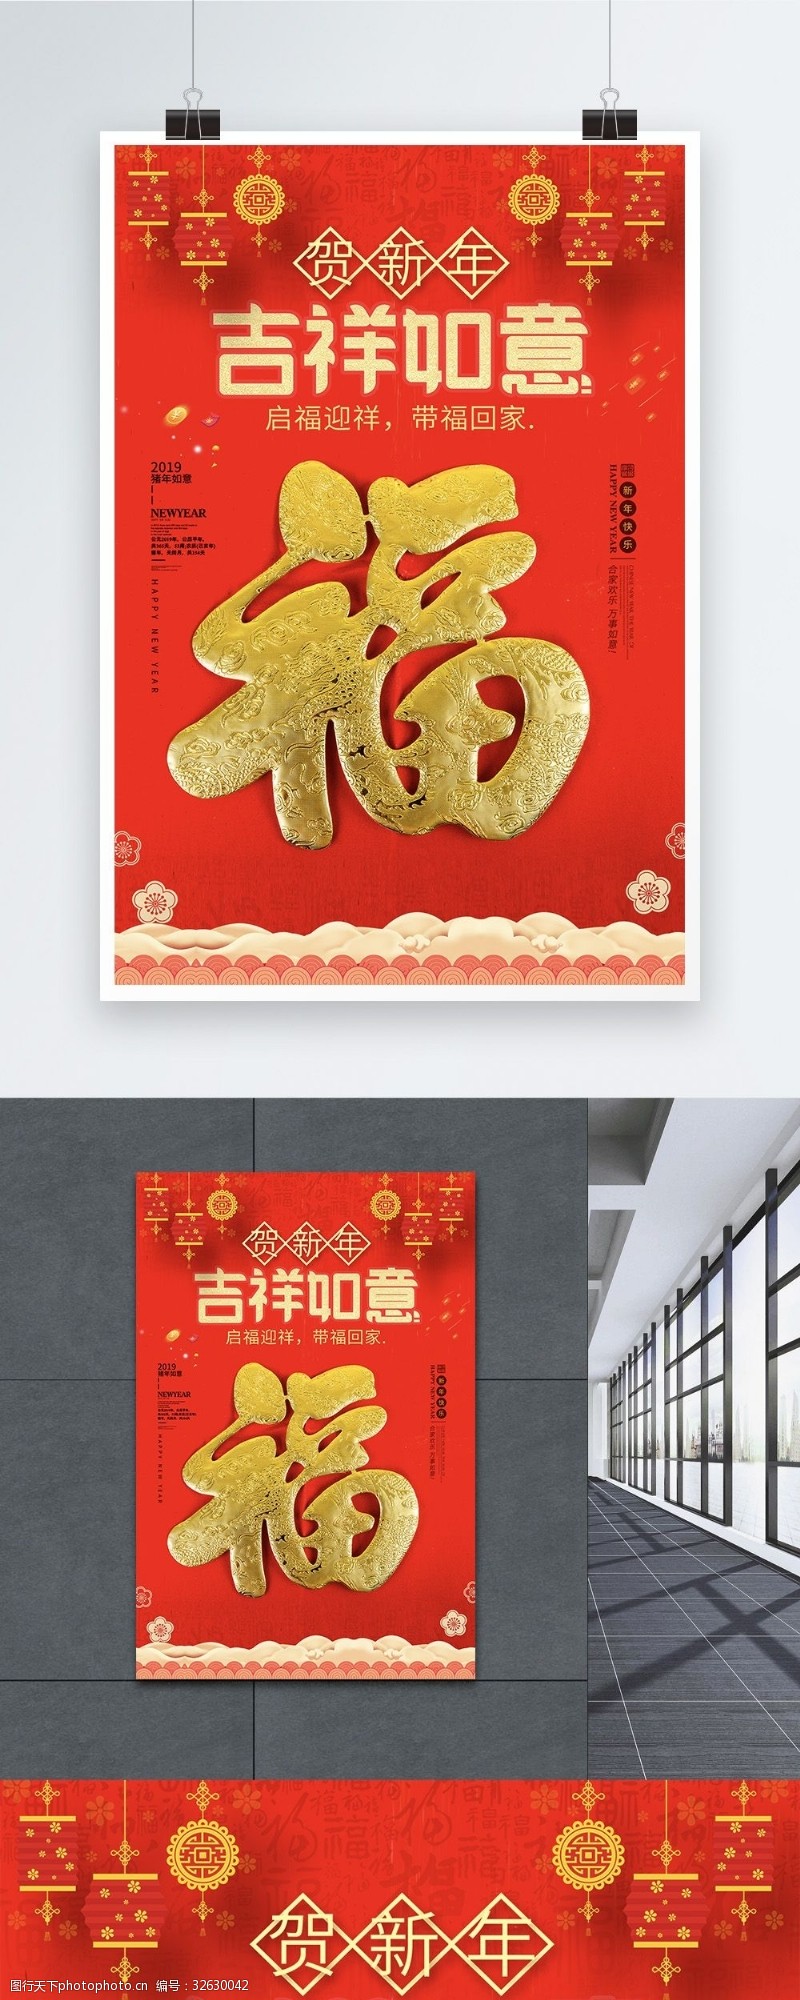 迎接祝新中国启福迎春带福回家海报设计